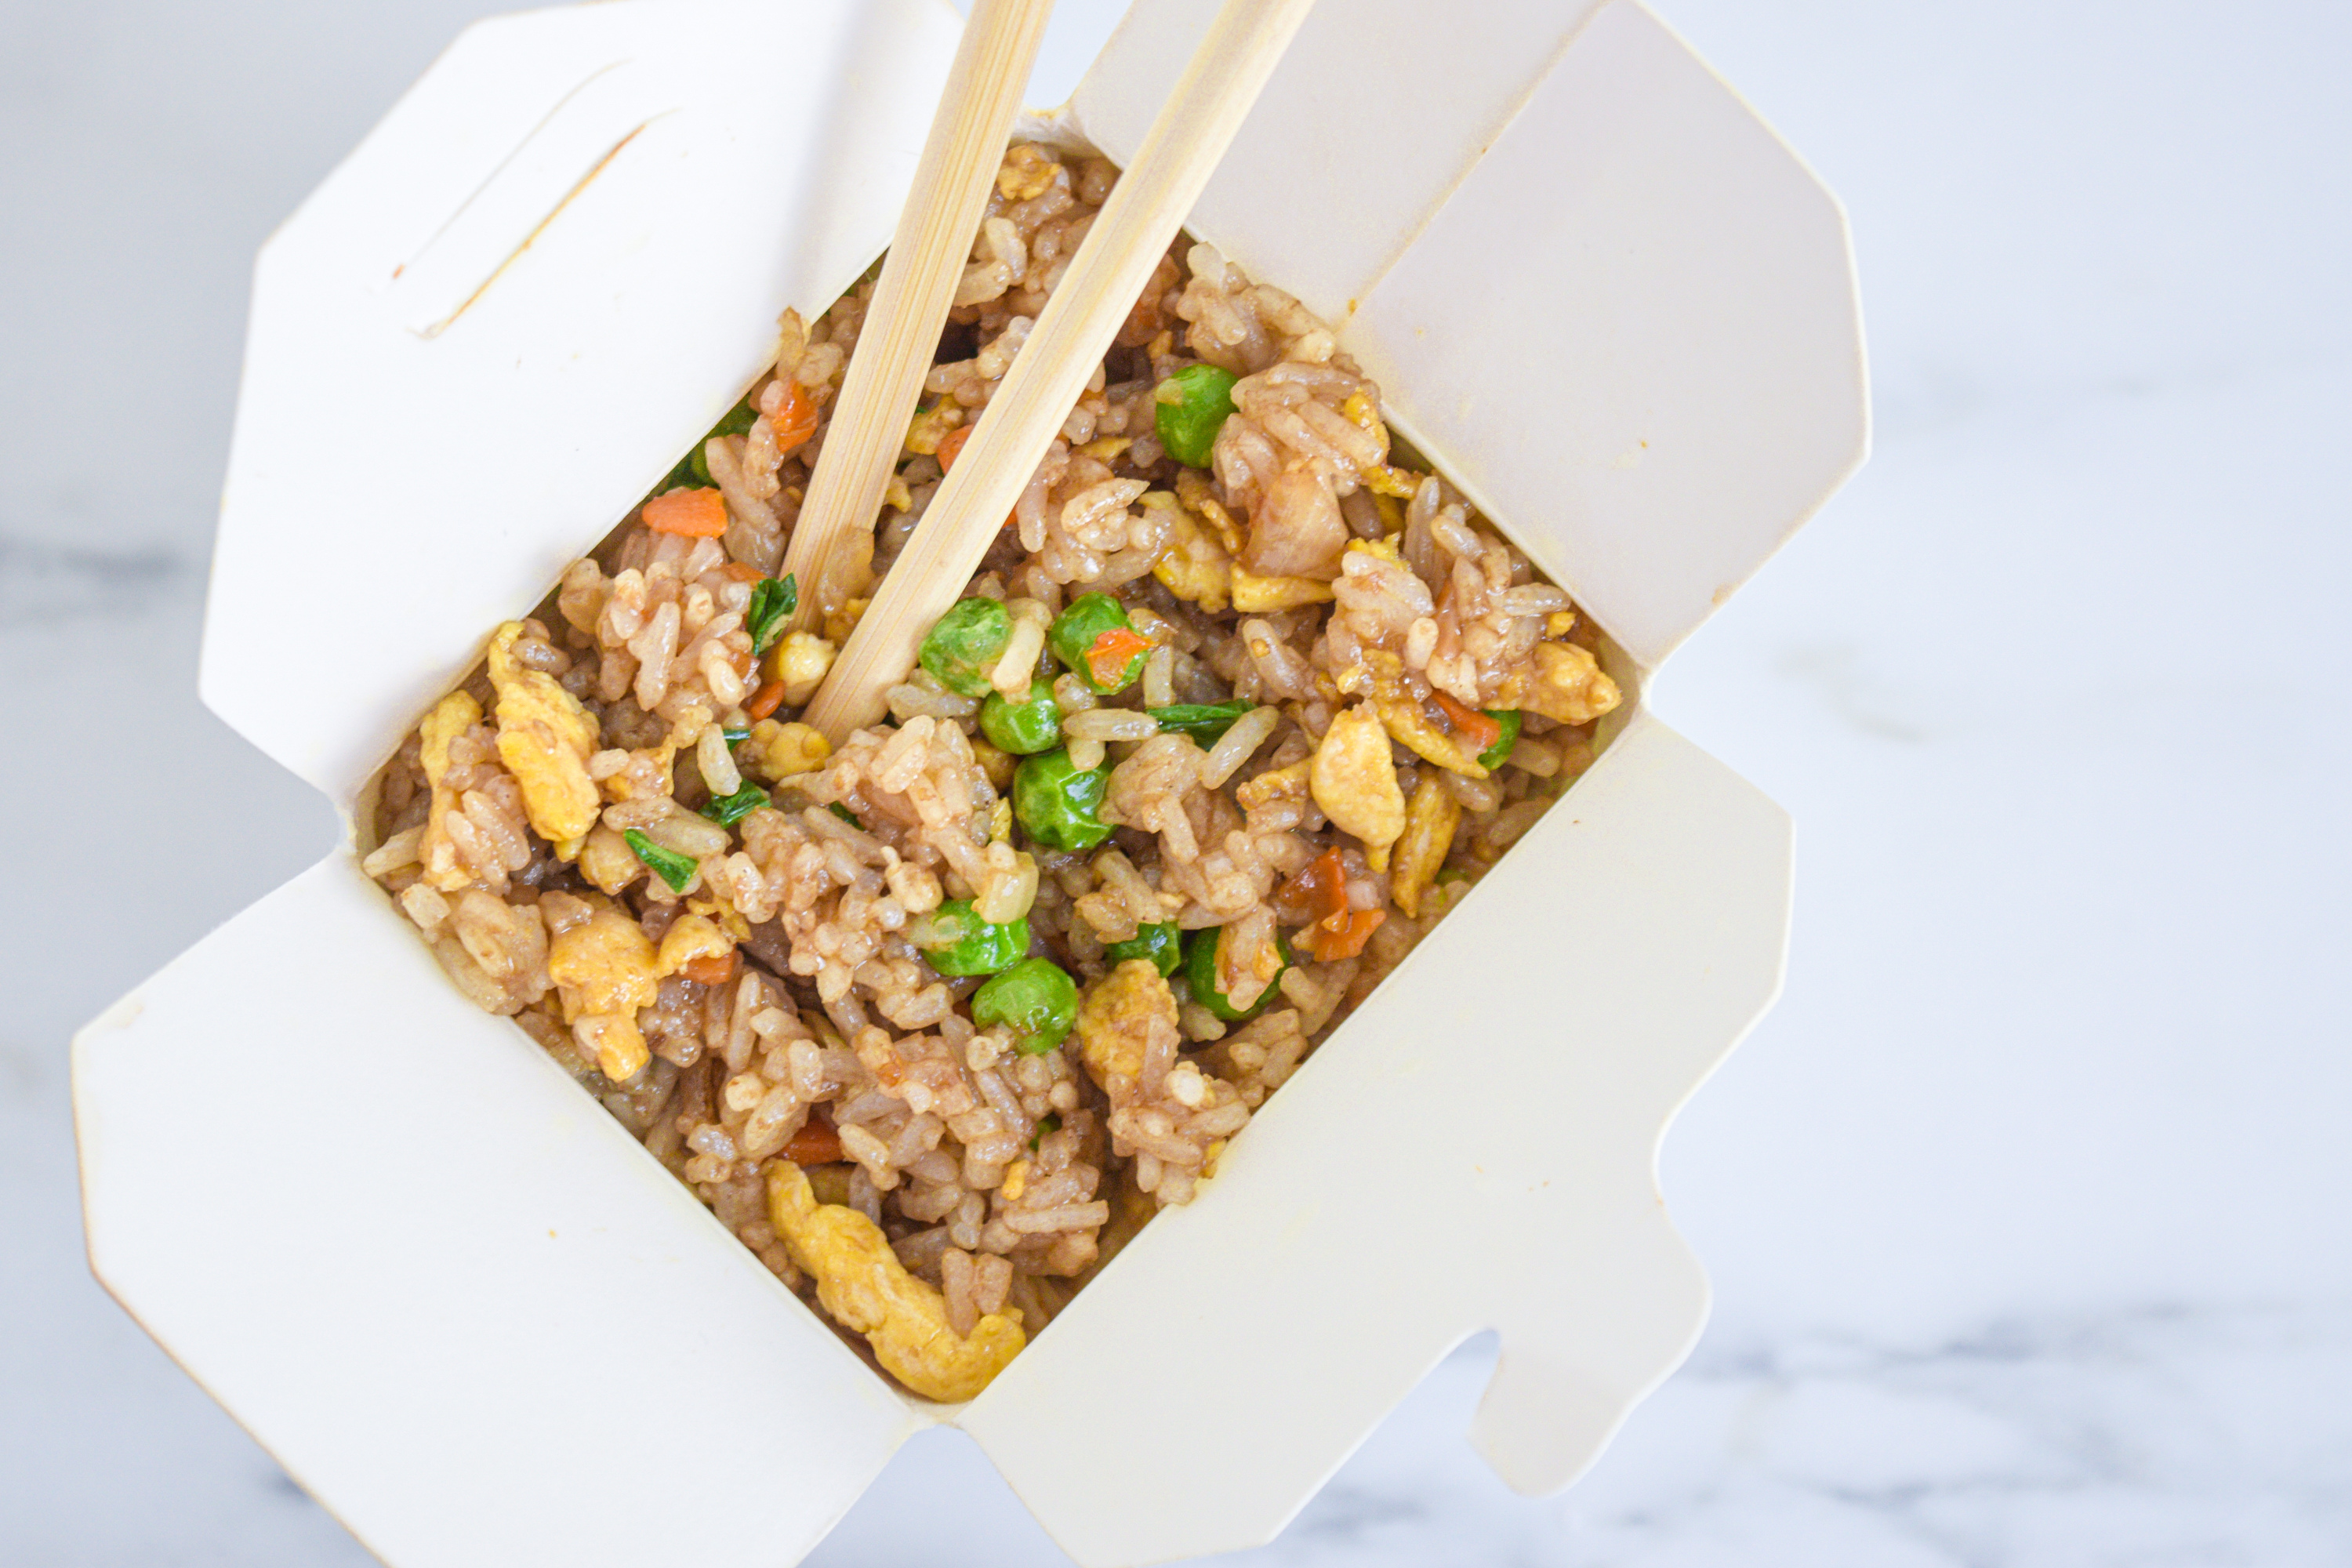 Жареный рис на гарнир – кулинарный рецепт